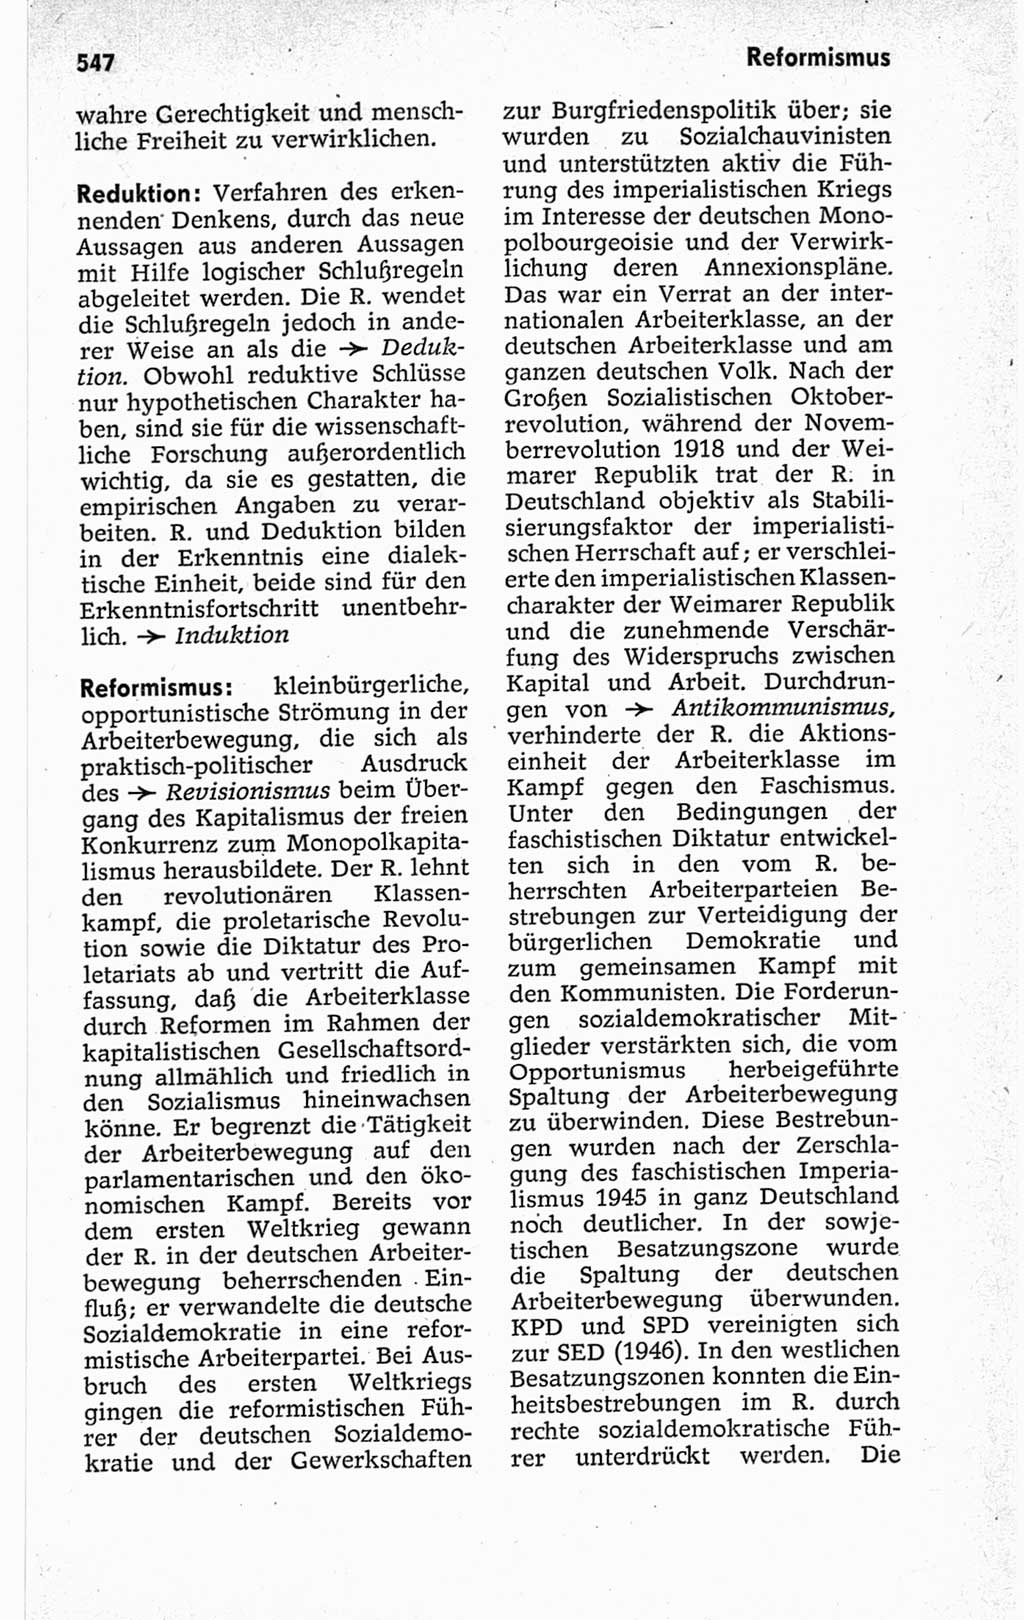 Kleines politisches Wörterbuch [Deutsche Demokratische Republik (DDR)] 1967, Seite 547 (Kl. pol. Wb. DDR 1967, S. 547)